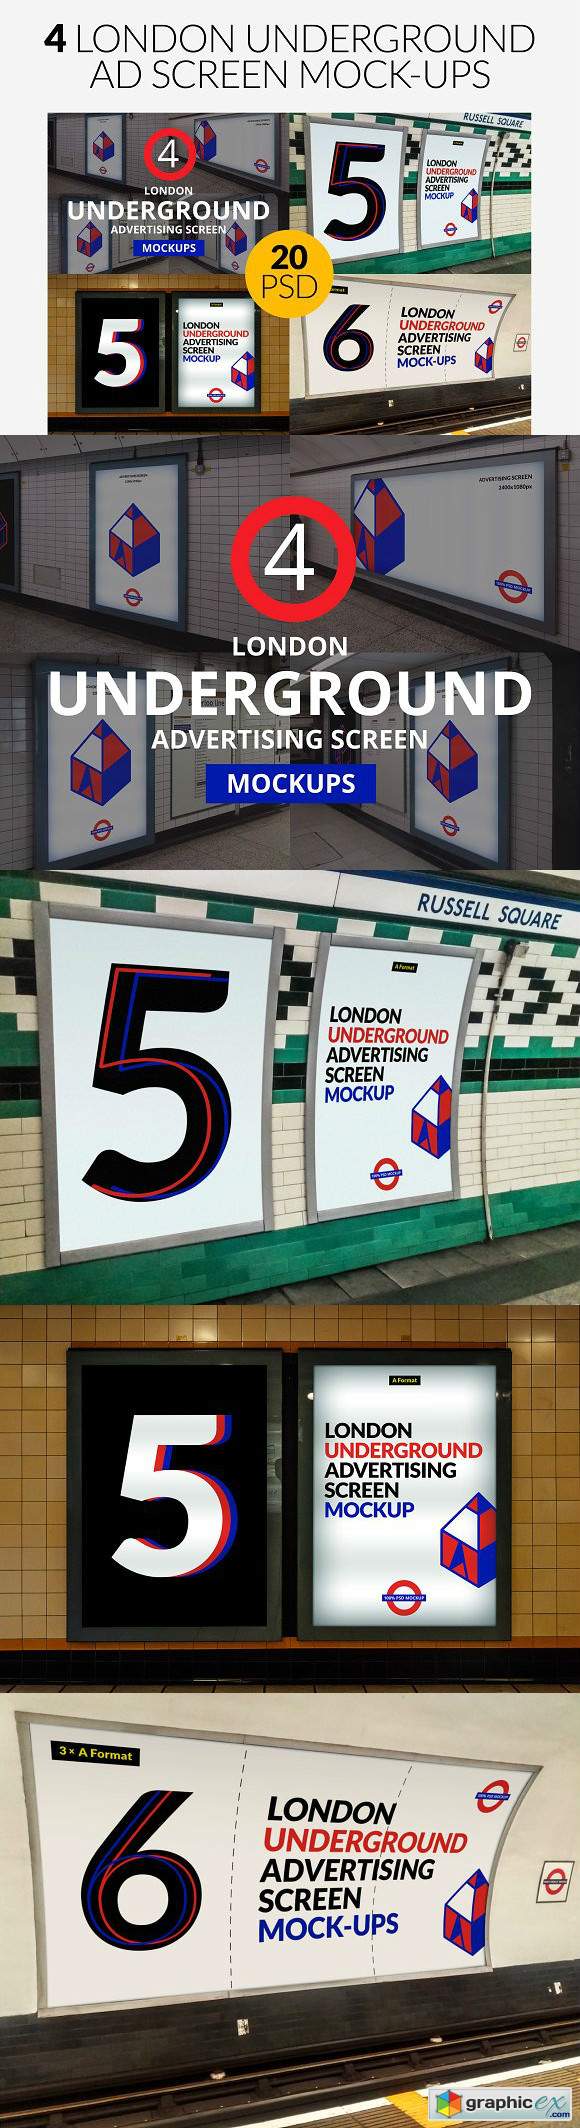 4 London Underground Mock-Ups Bundle